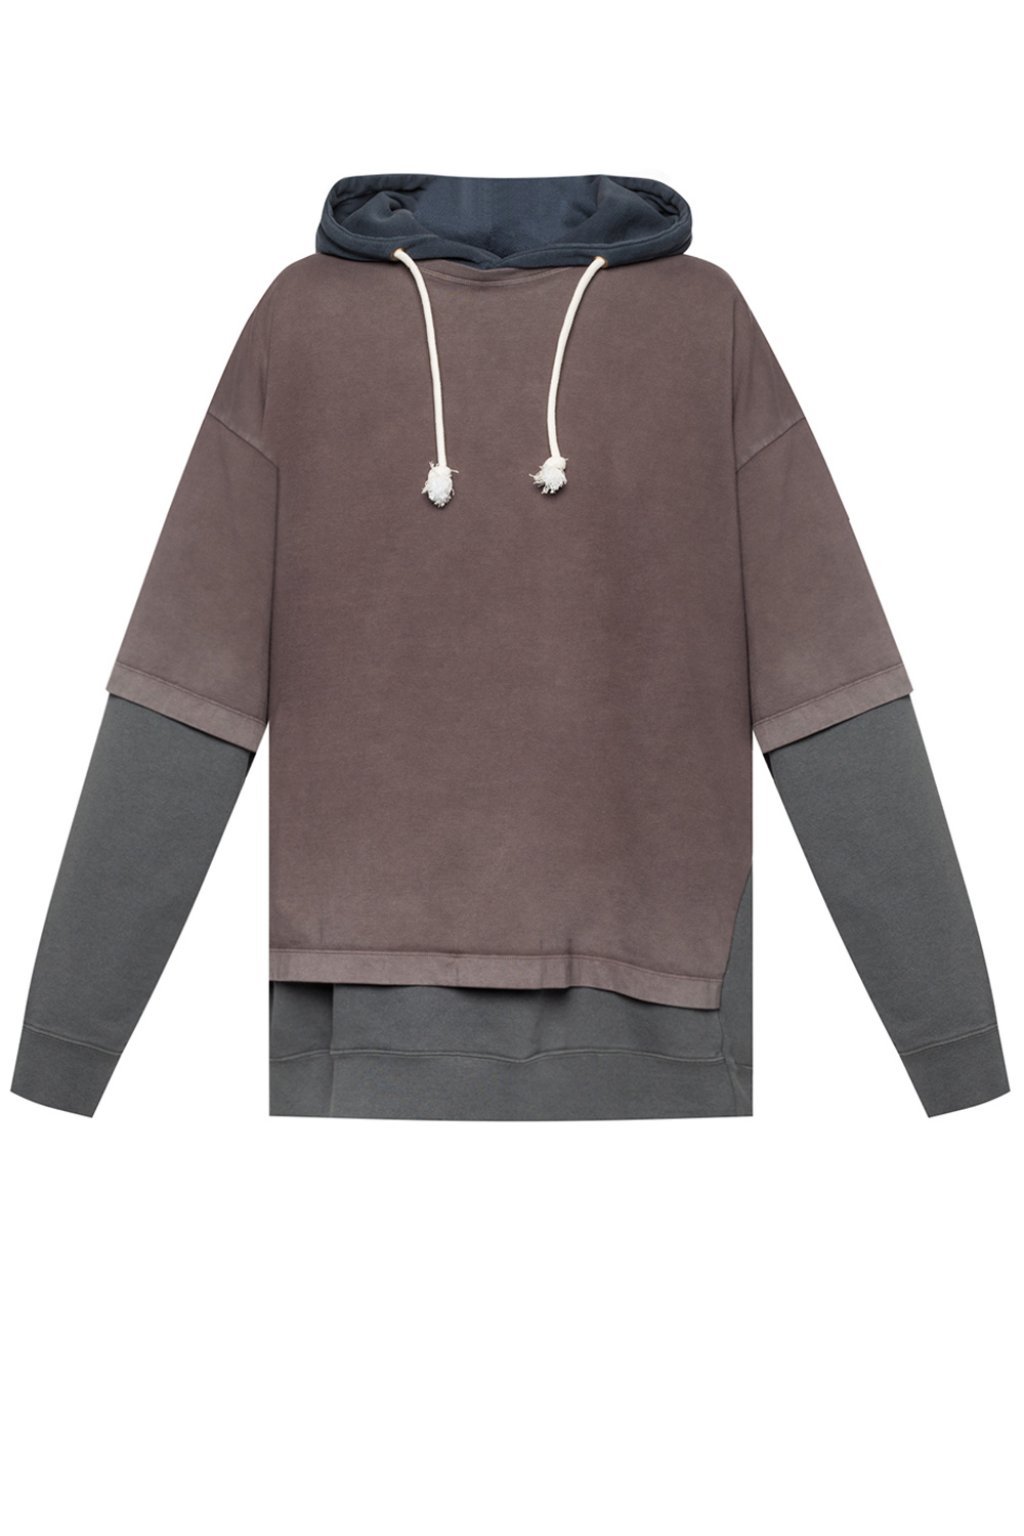 Maison Margiela Two-layered hooded sweatshirt | Men's Clothing 